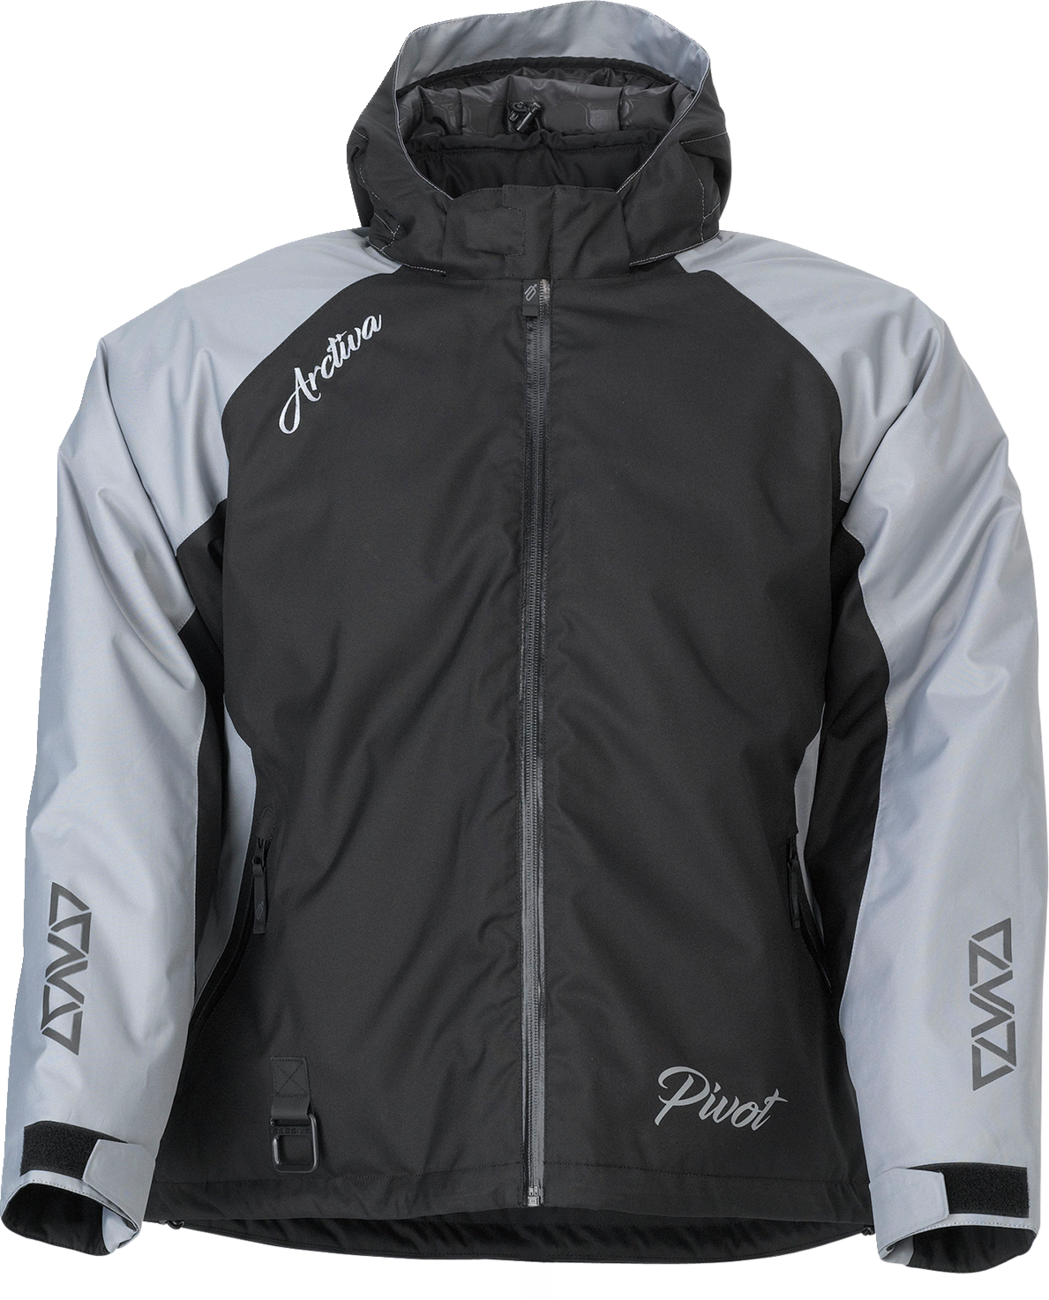 ARCTIVA Women's Pivot 5 Hooded Jacket - Gray - Small 3121-0803